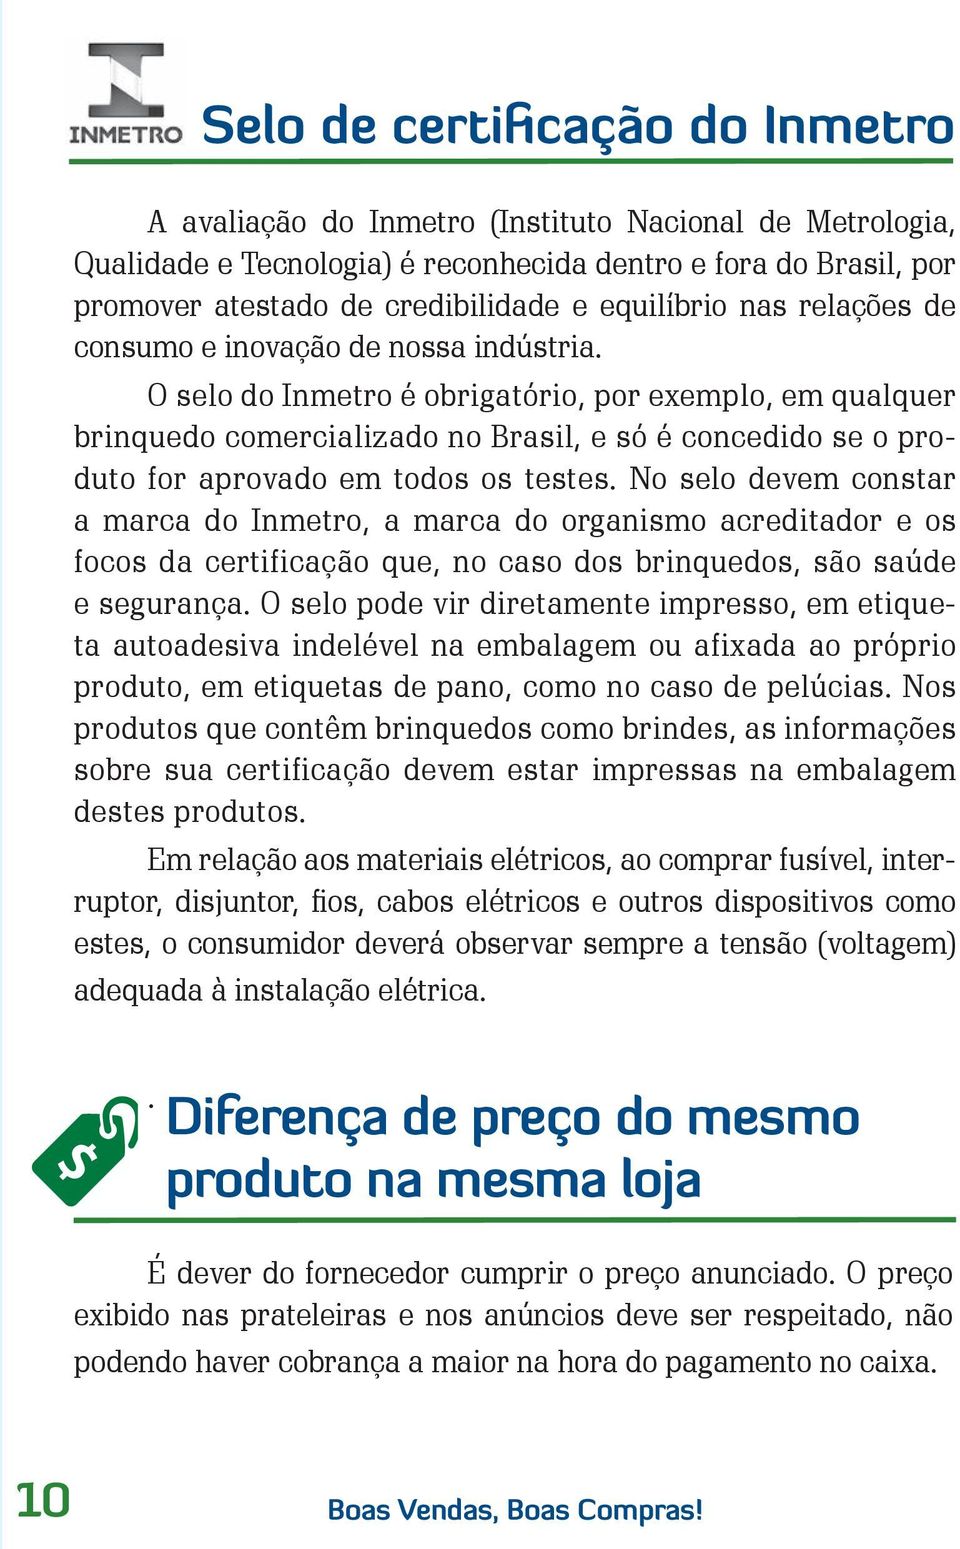 O selo do Inmetro é obrigatório, por exemplo, em qualquer brinquedo comercializado no Brasil, e só é concedido se o produto for aprovado em todos os testes.